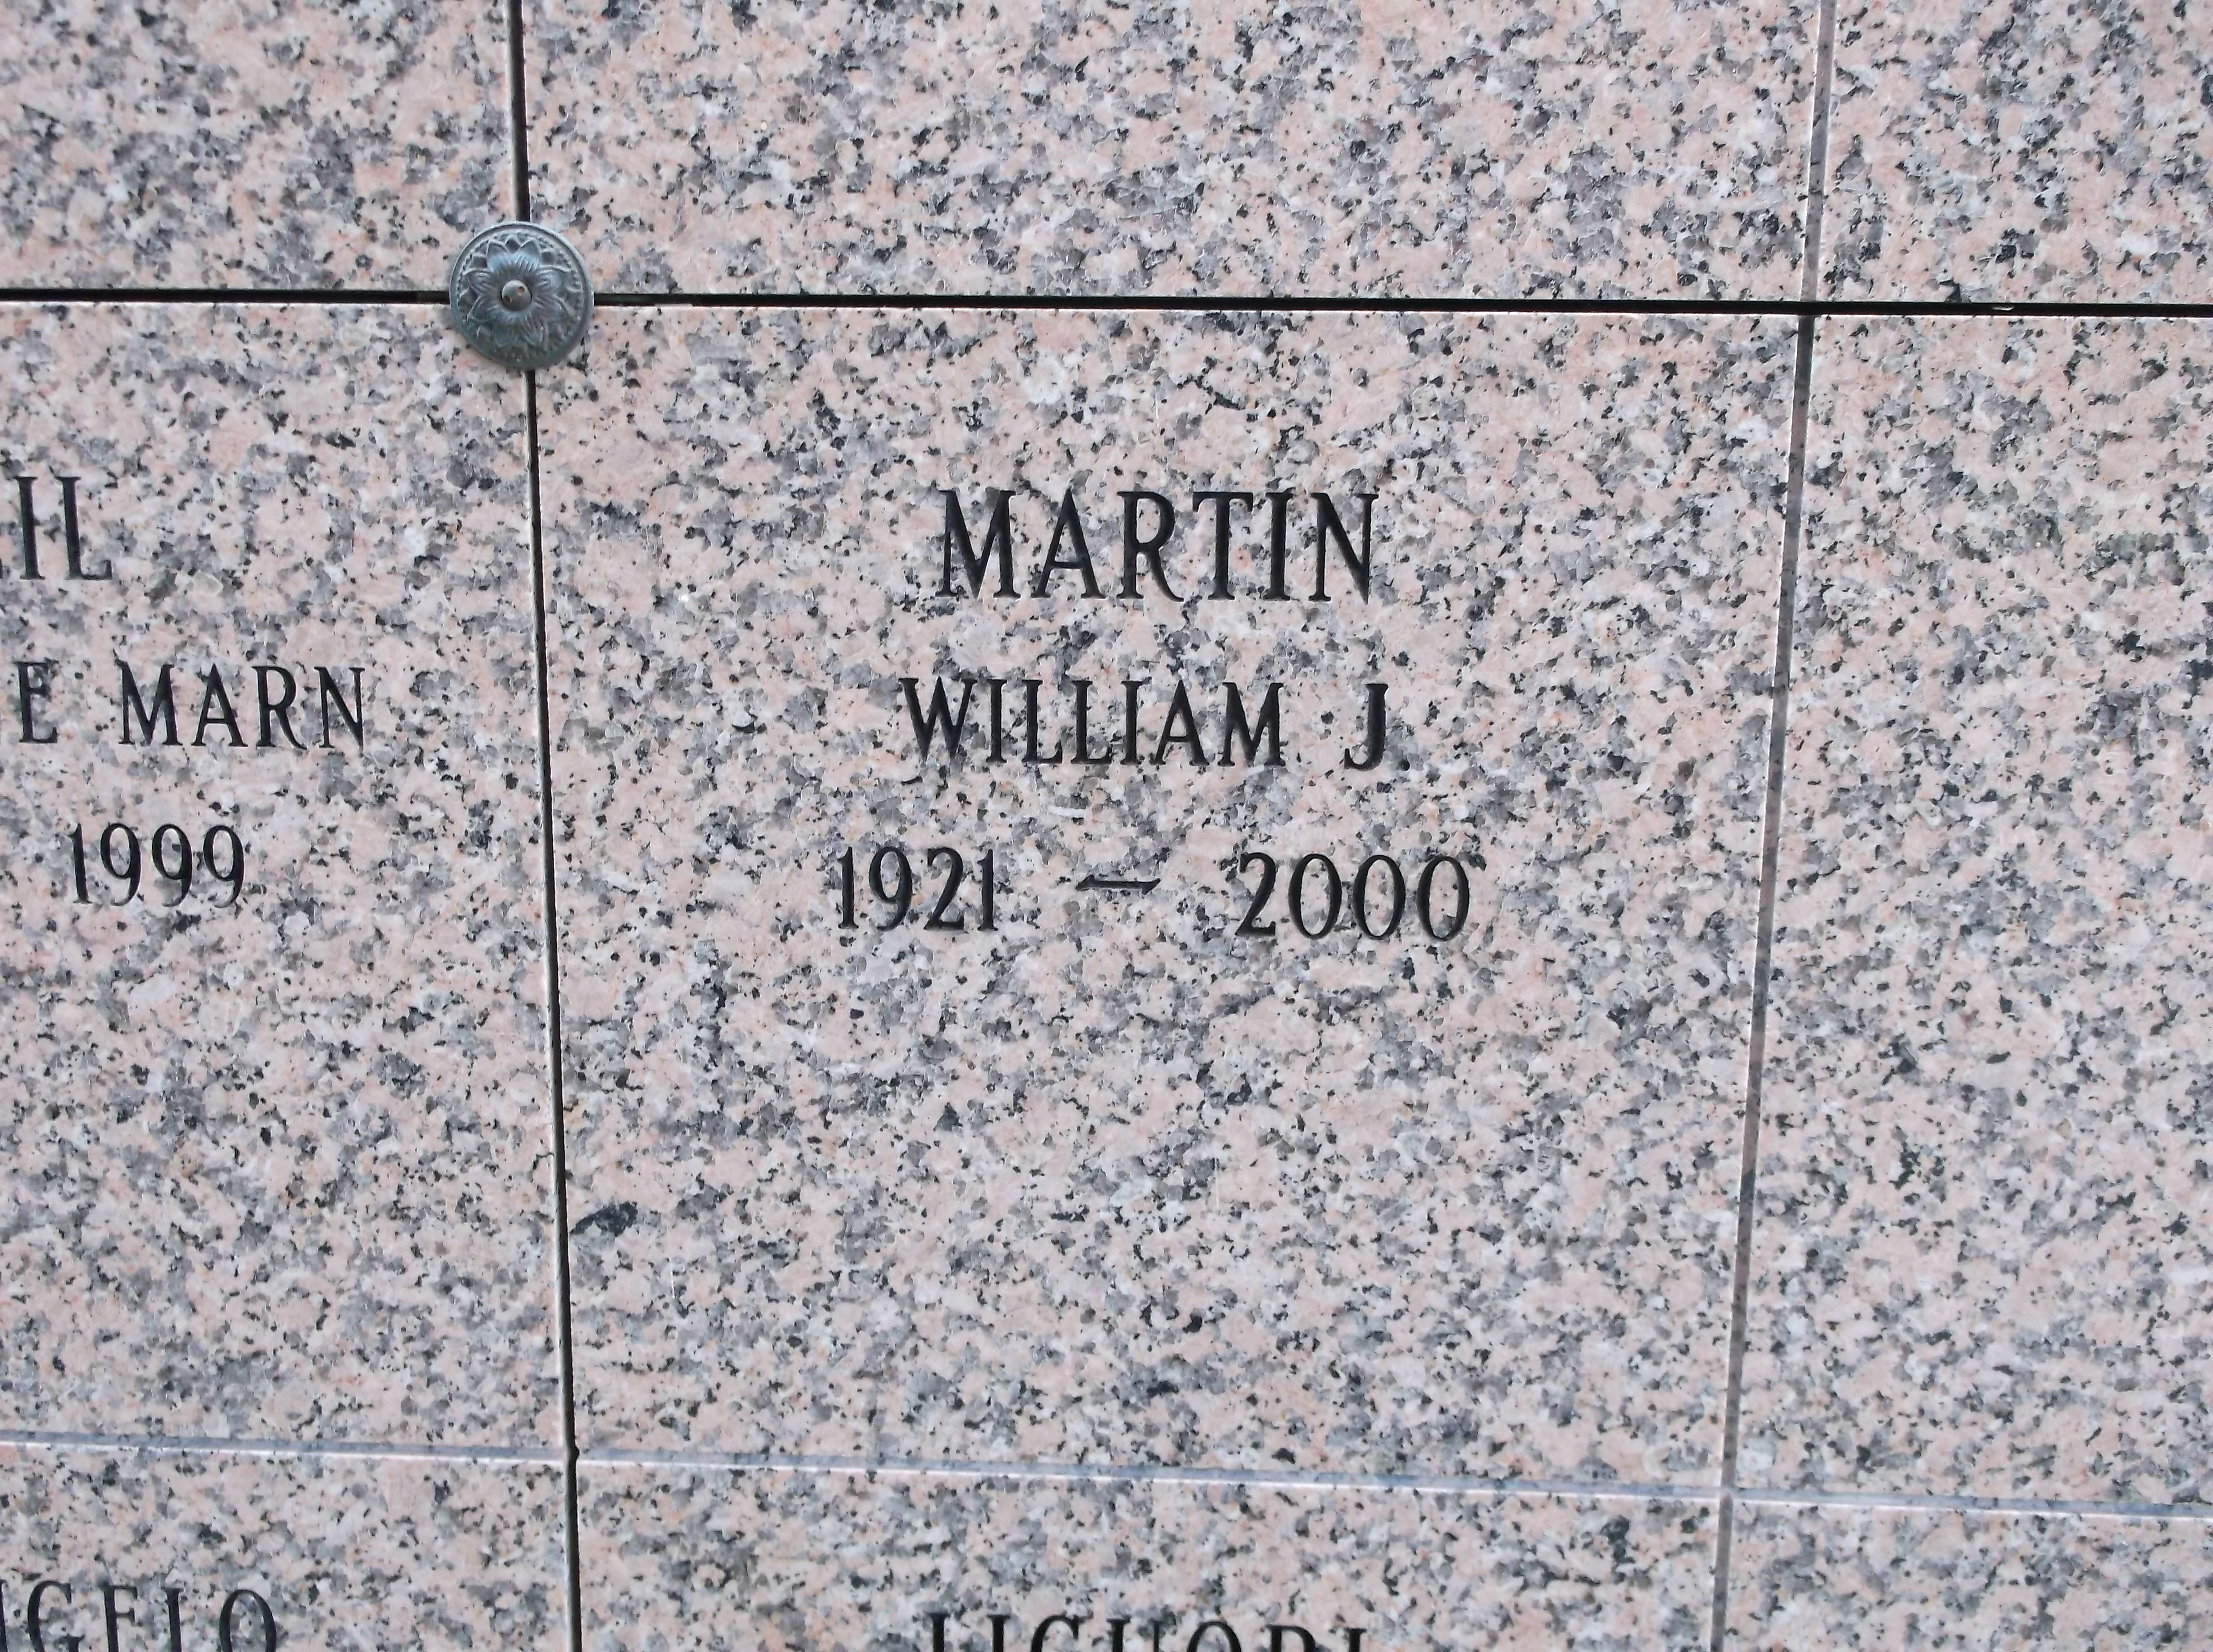 William J Martin